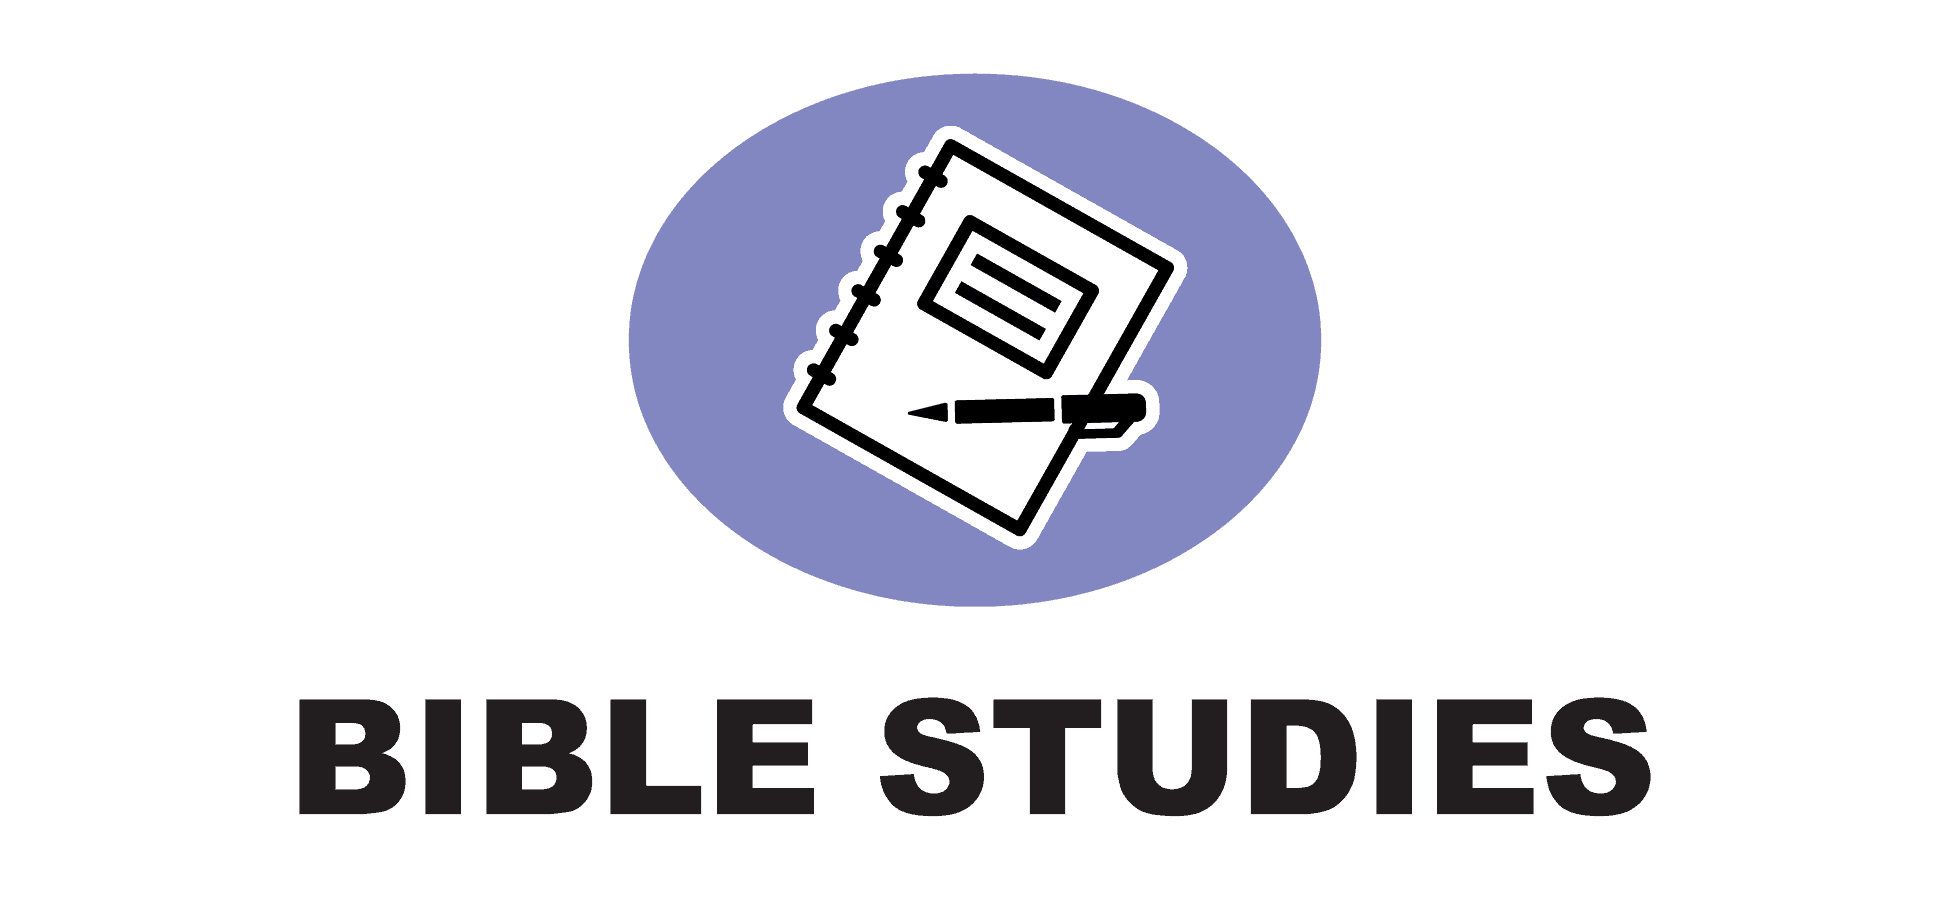 Bible Studies - 4C logo 02